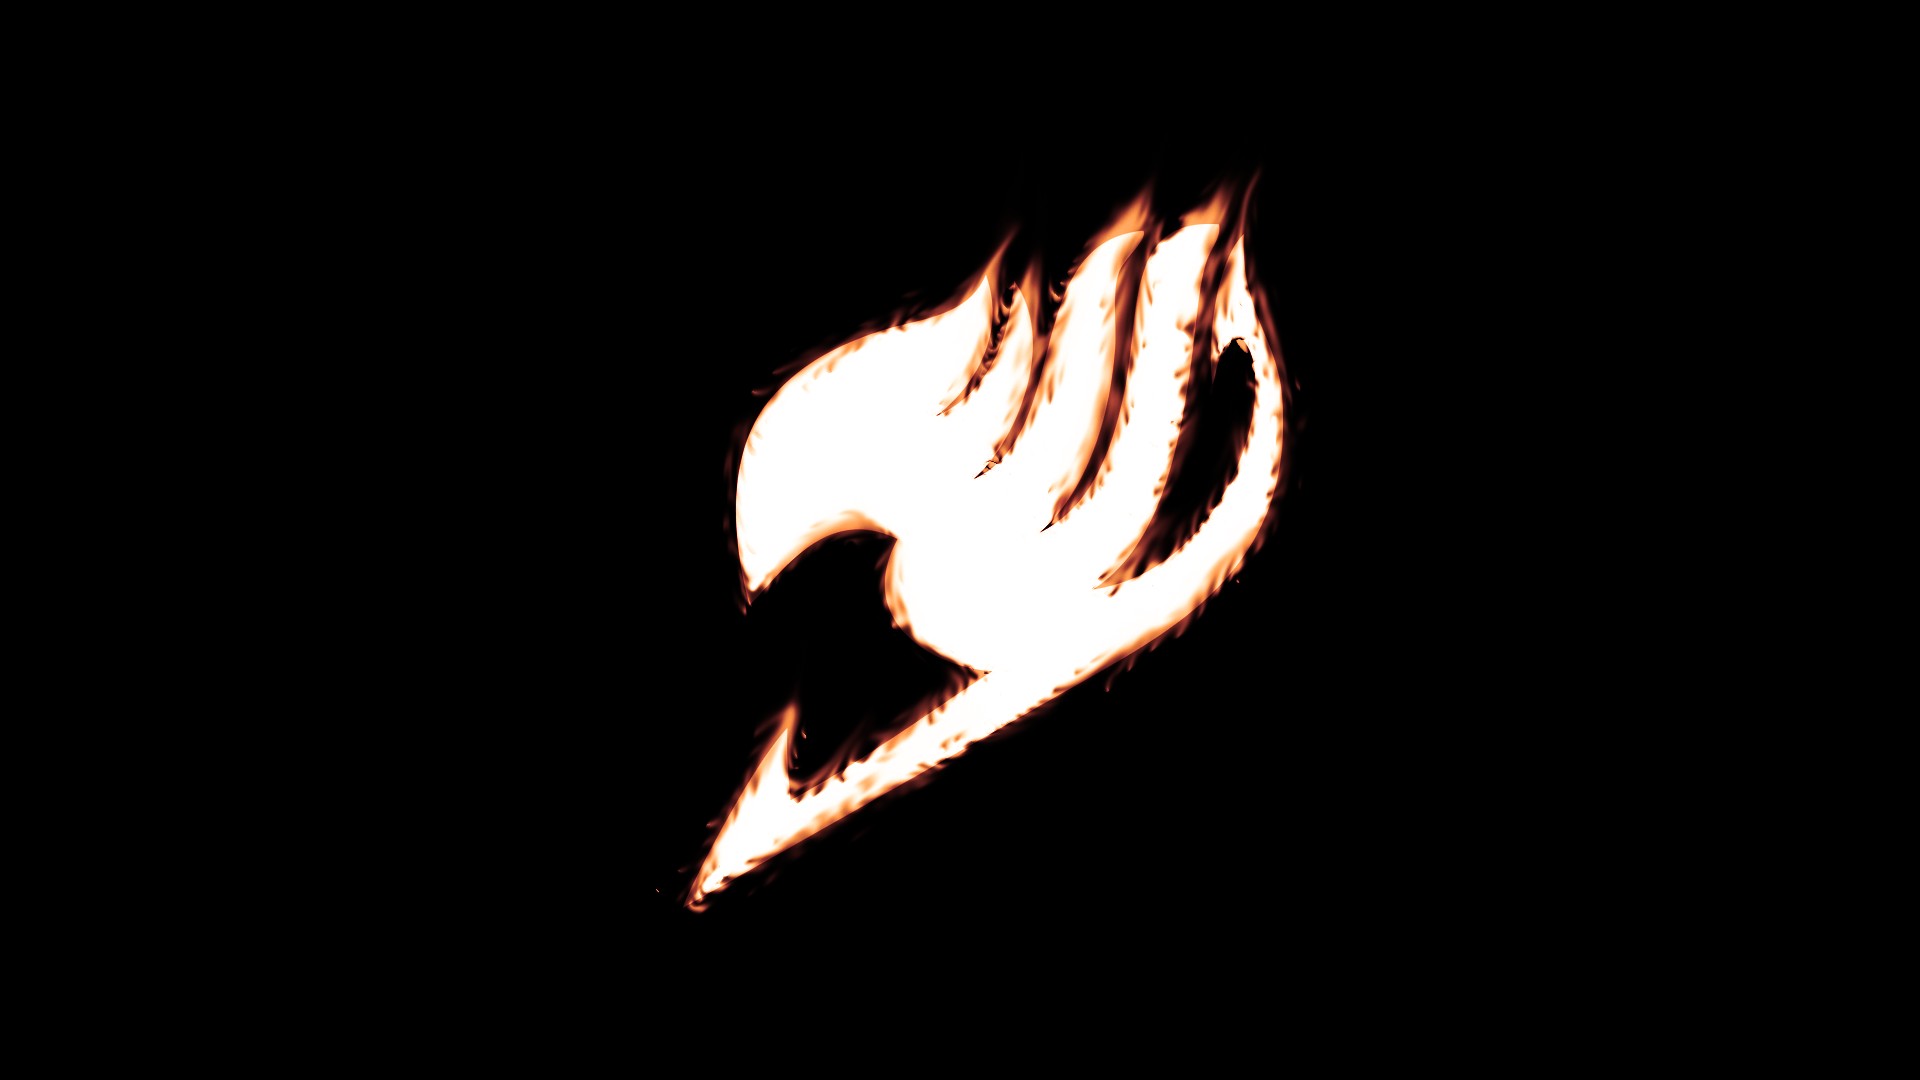 페어리 테일 로고 벽지,불꽃,열,불,어둠,상징